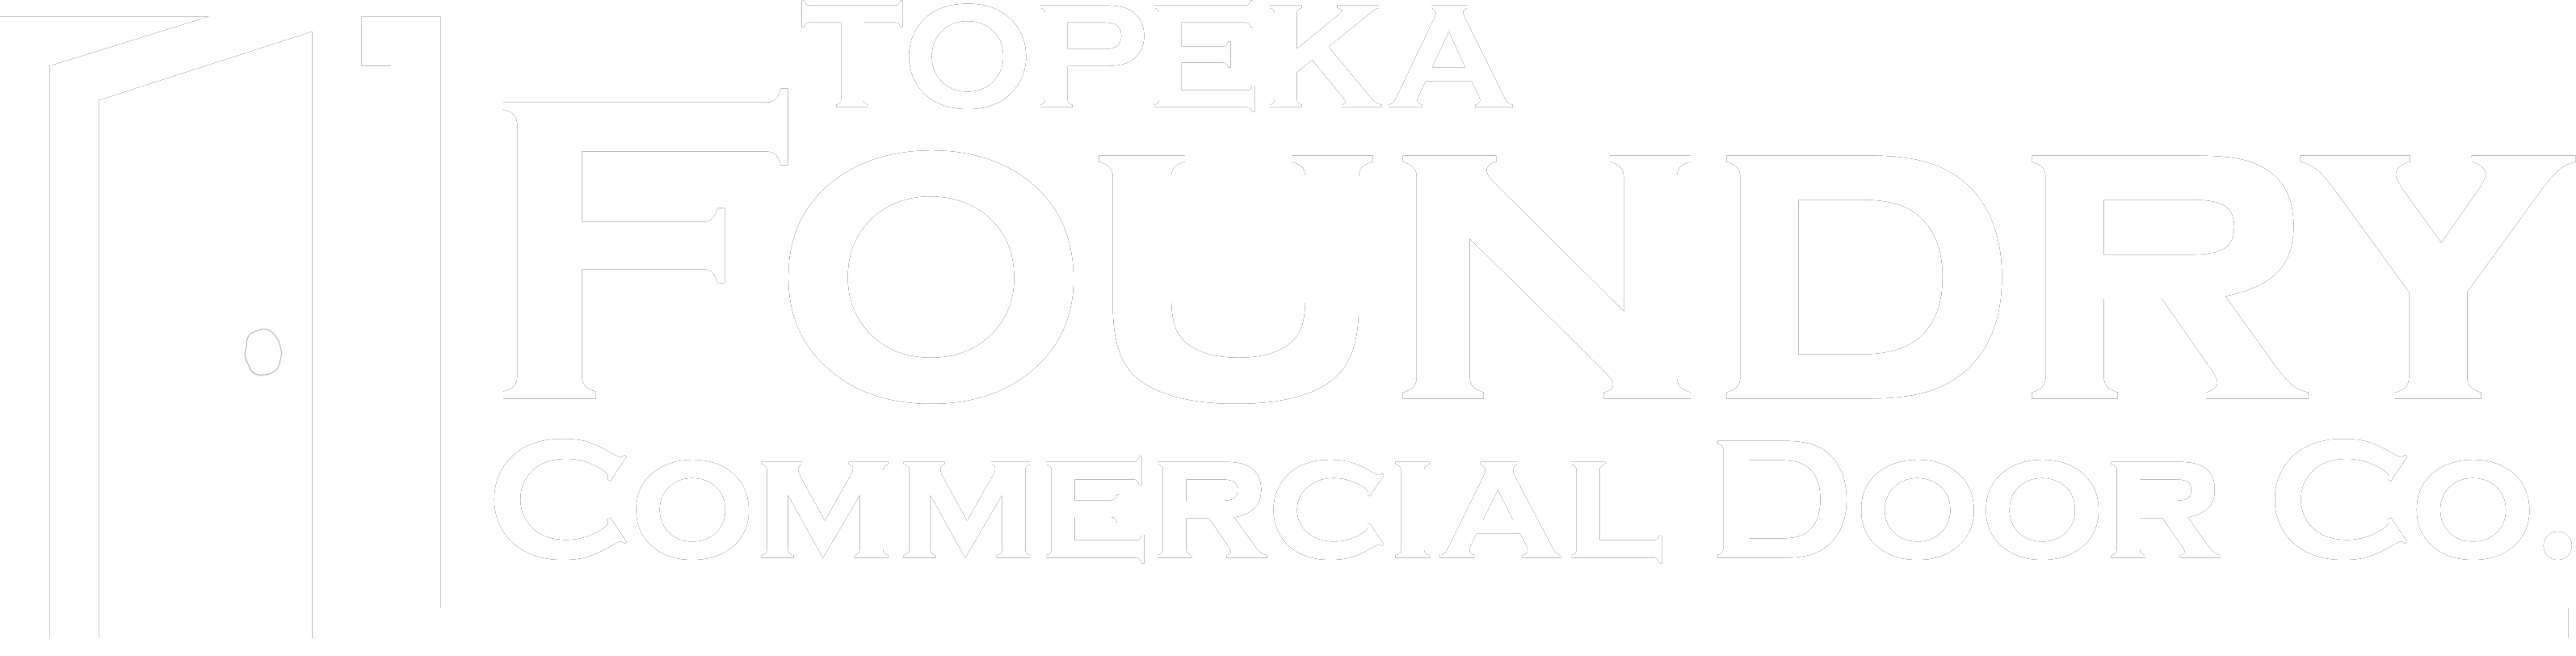 Topeka Foundry Commercial Door Company